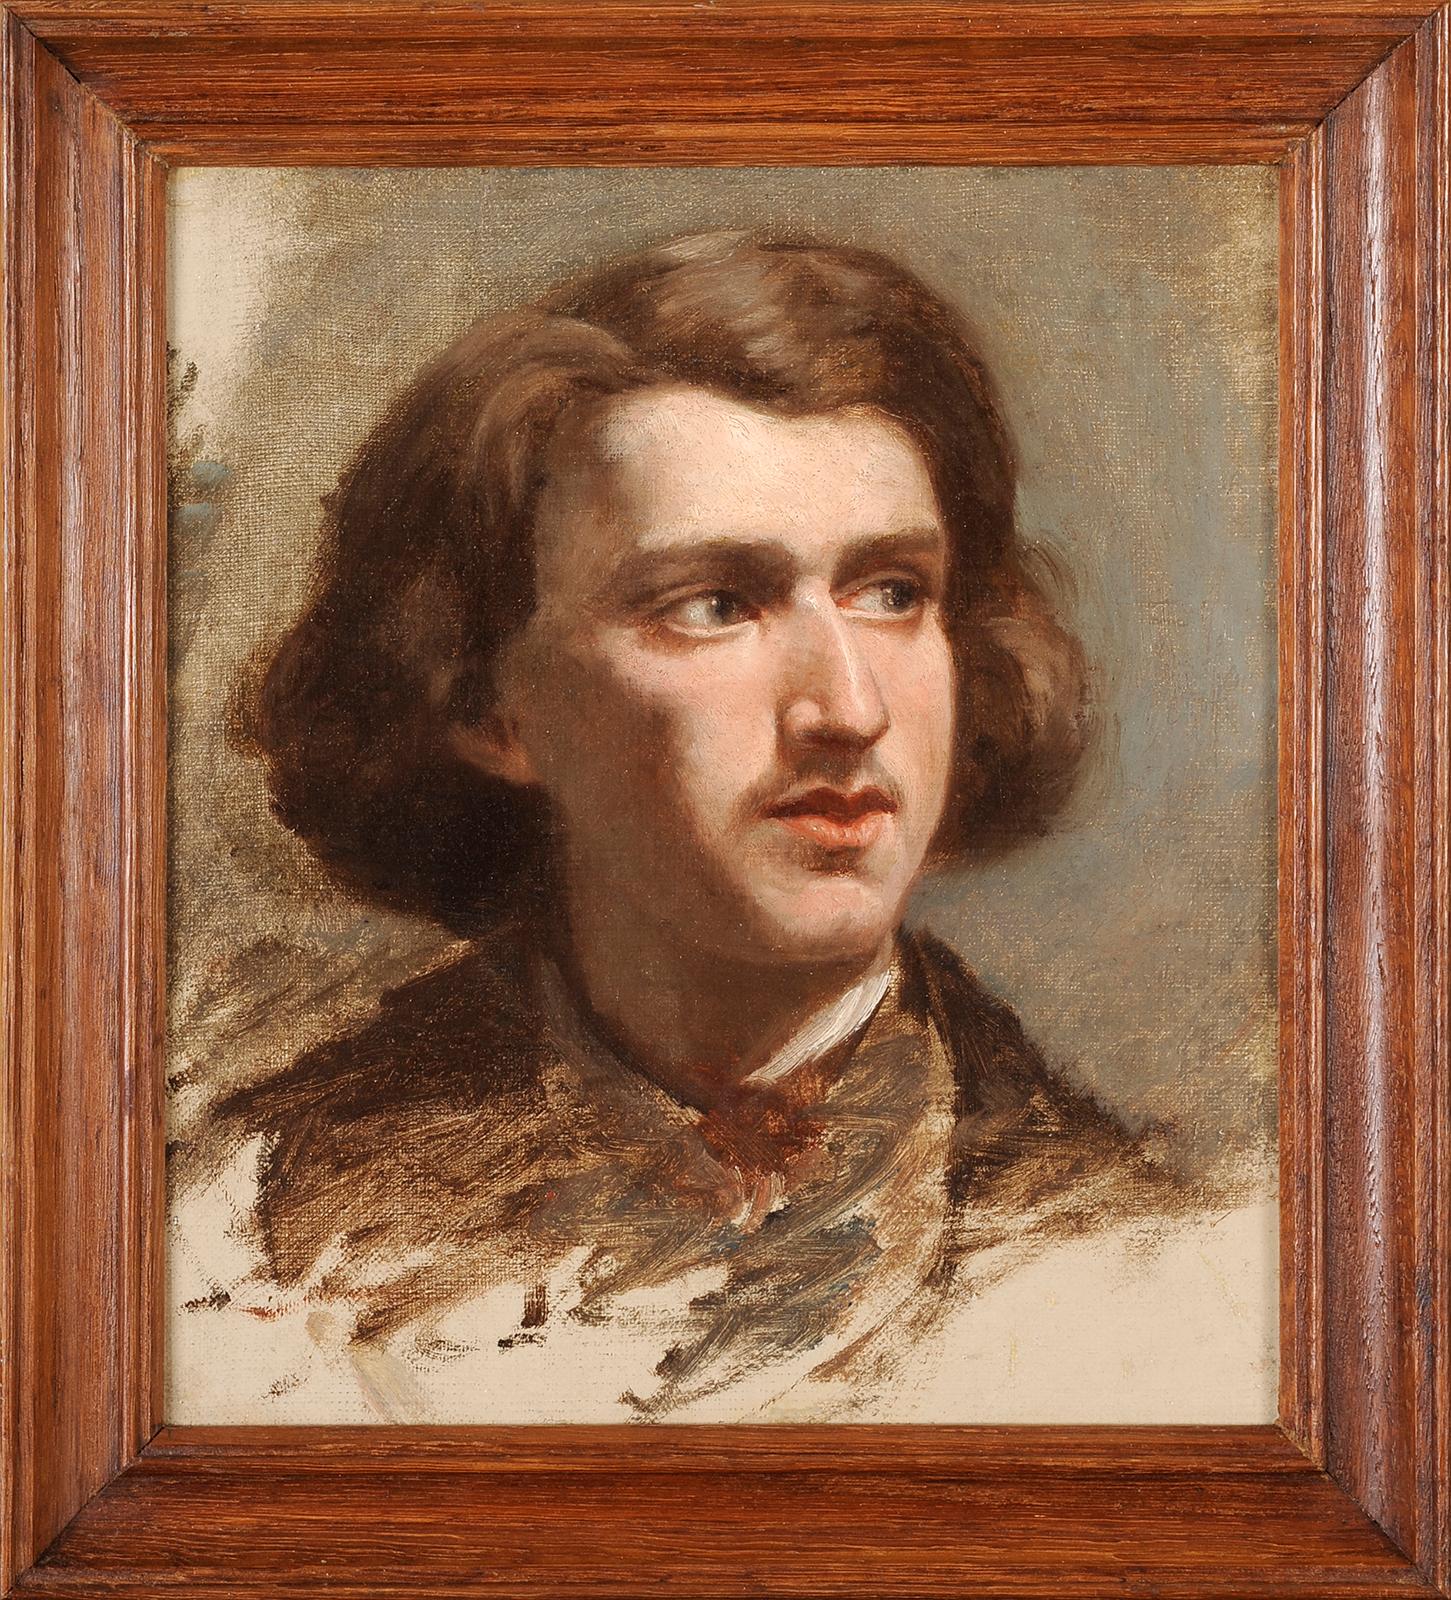 Unknown Portrait Painting - Sketch of a dandy portrait